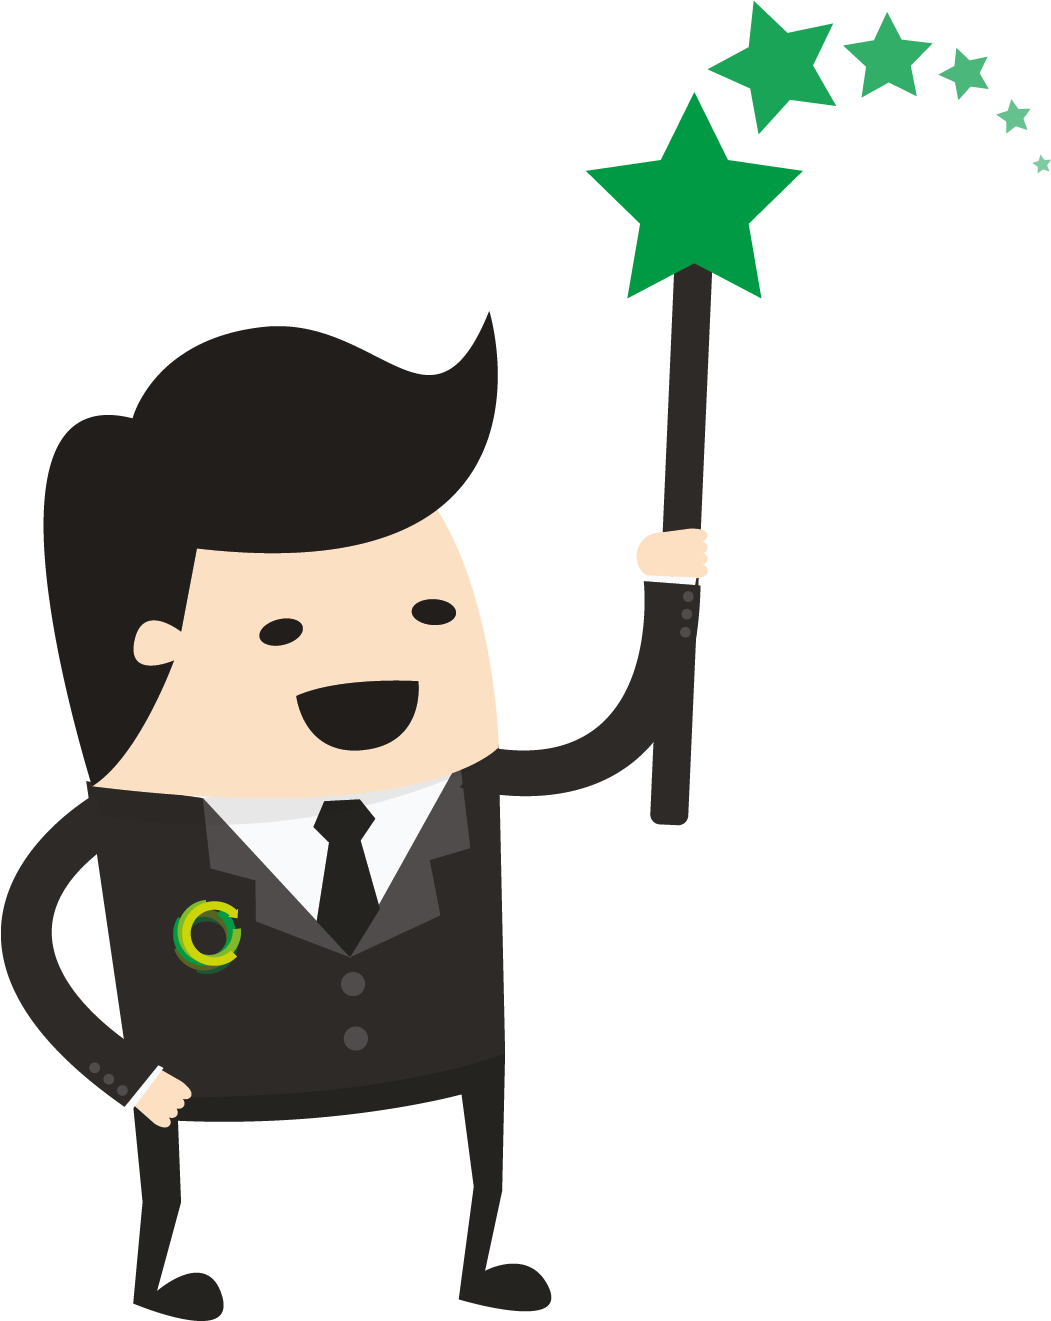 A Cartoon Of A Man Holding A Green Star